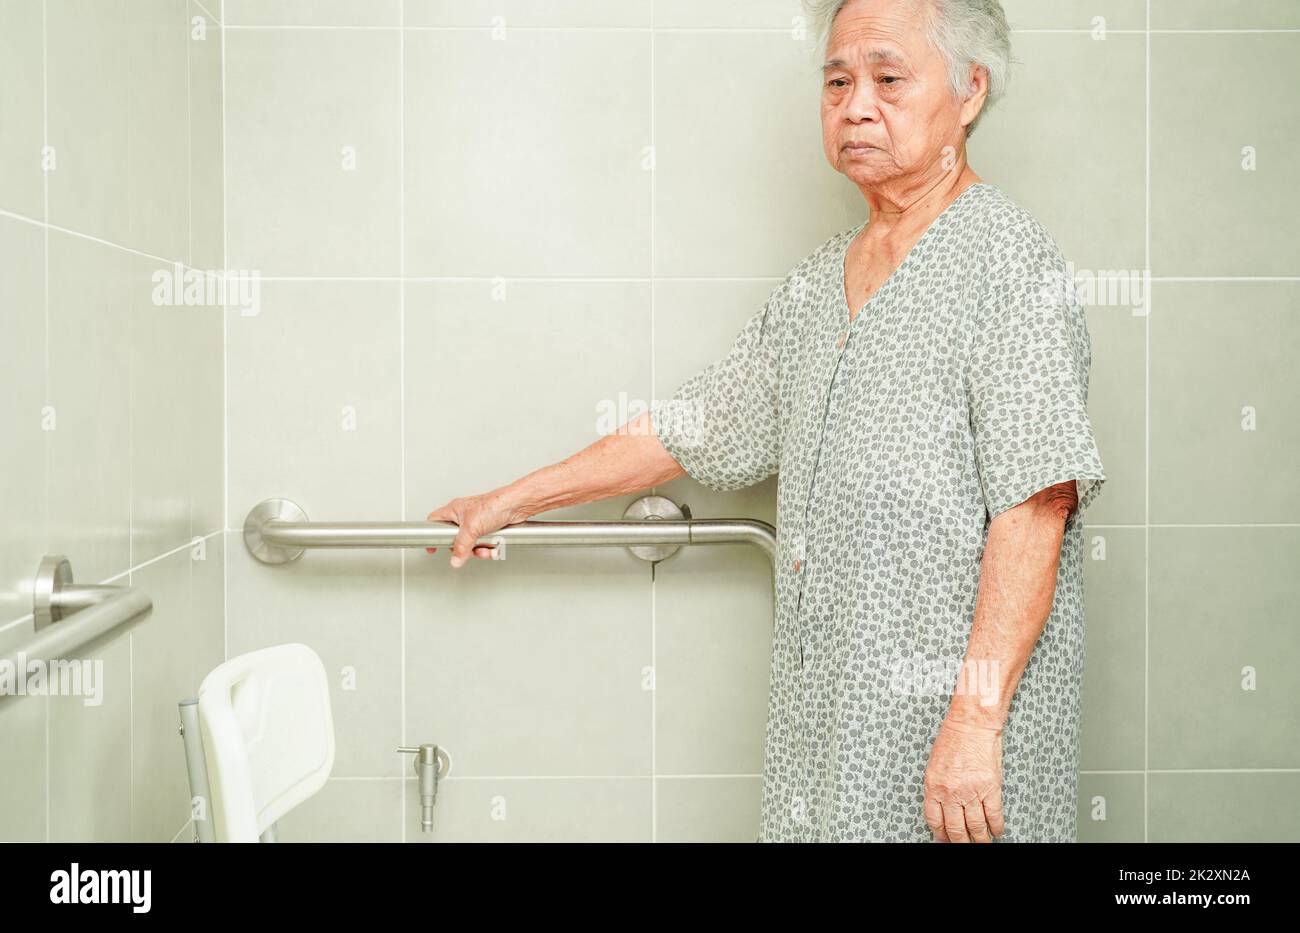 Anziana asiatica paziente donna uso servizi igienici sostegno in bagno, corrimano di sicurezza barra di presa, sicurezza in ospedale di cura. Foto Stock